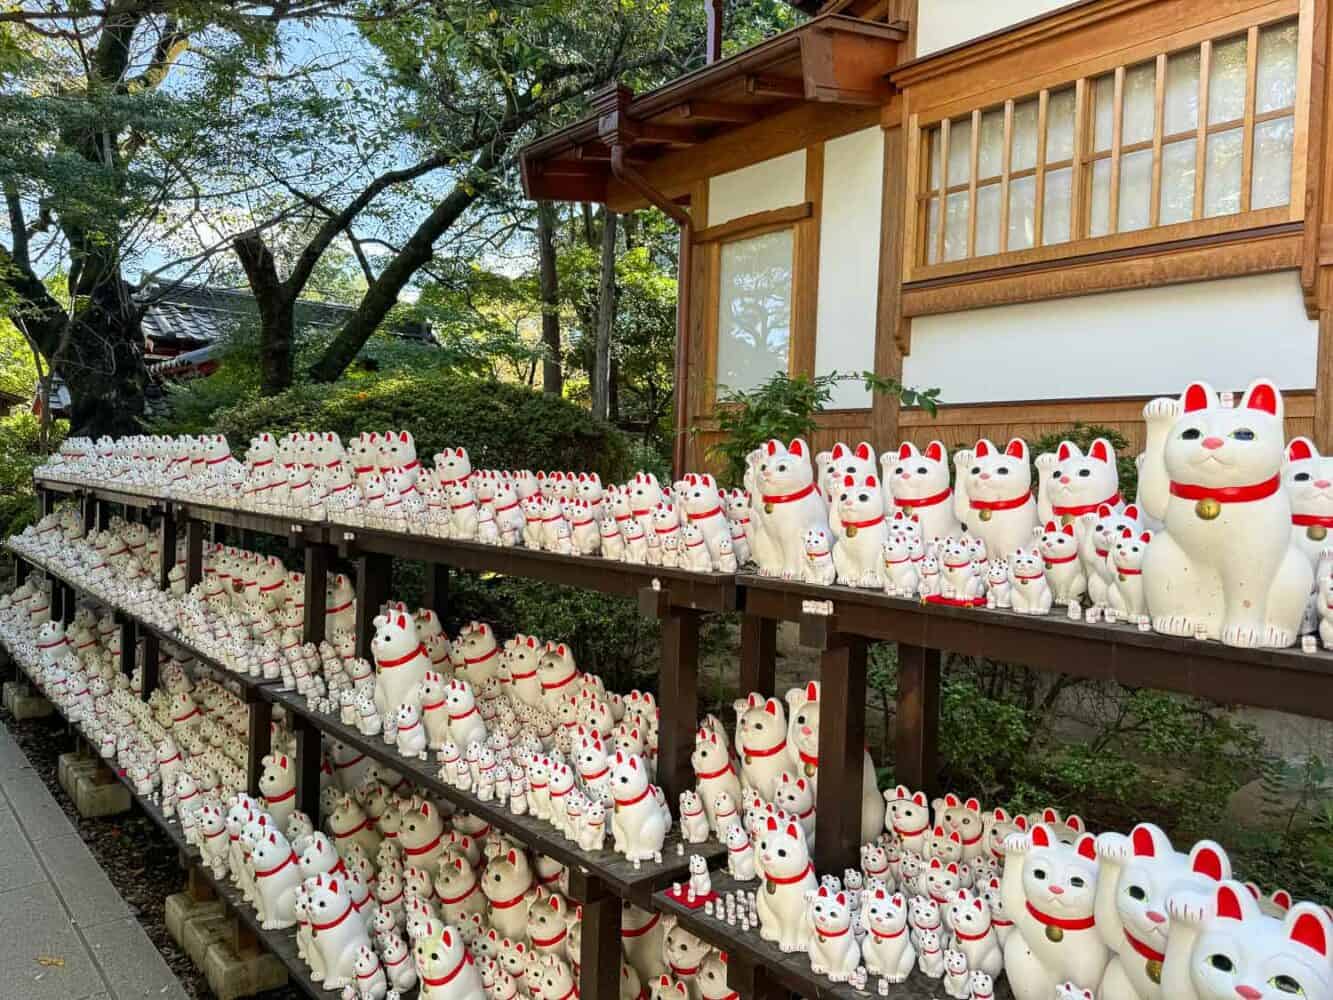 Maneki neko figurines at Gotokuji temple in Tokyo